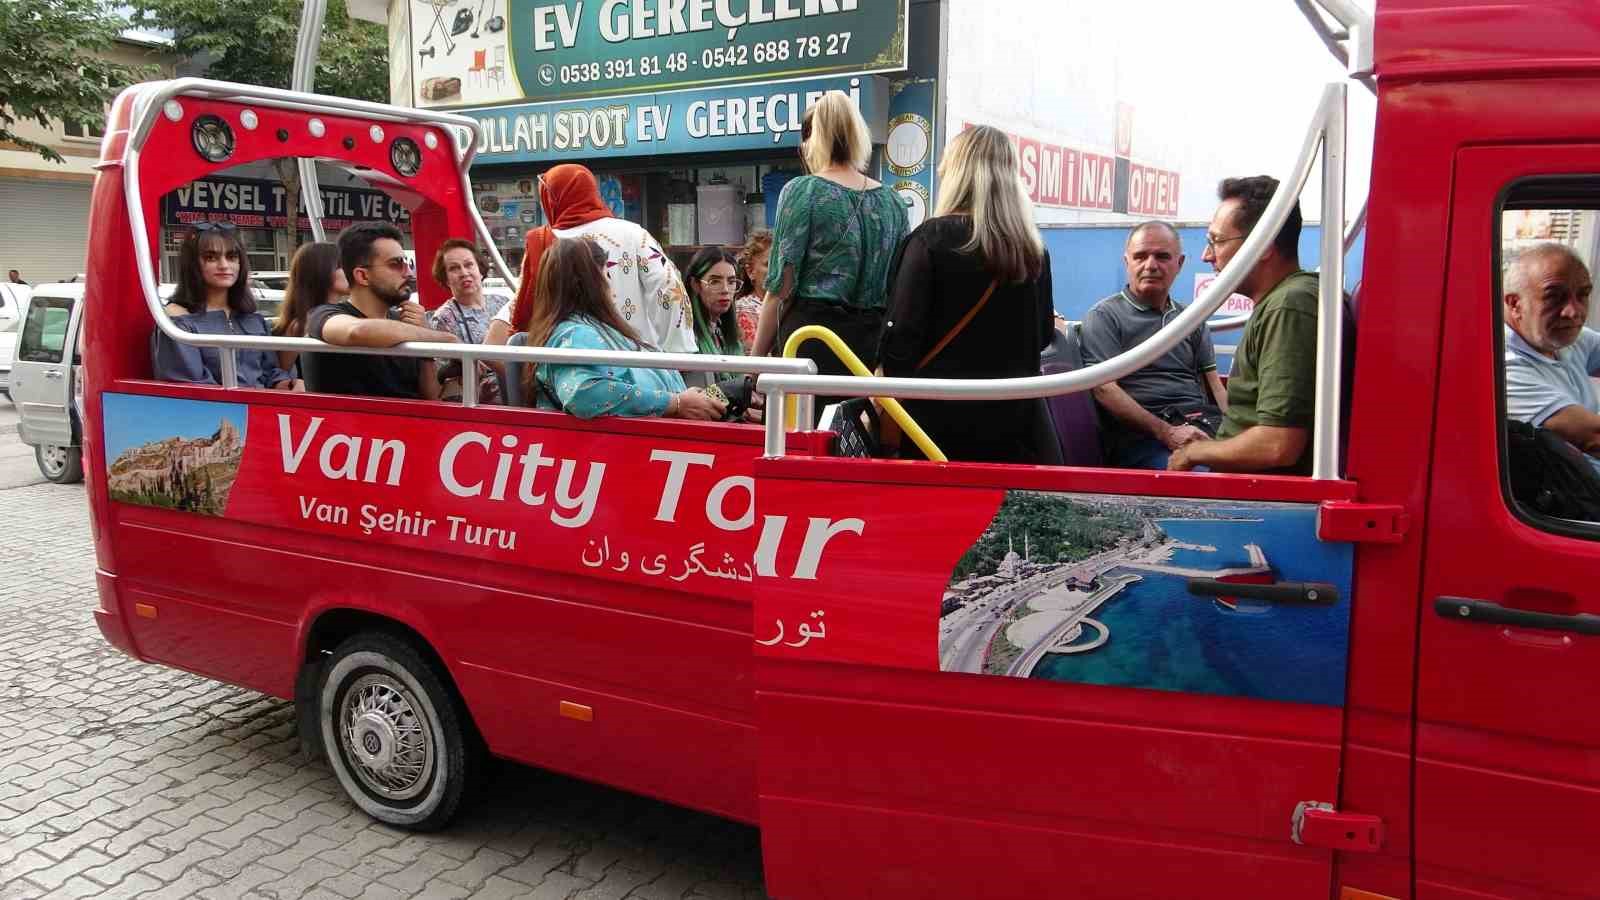 İranlı turistlere üstü açık minibüsle şehir turu